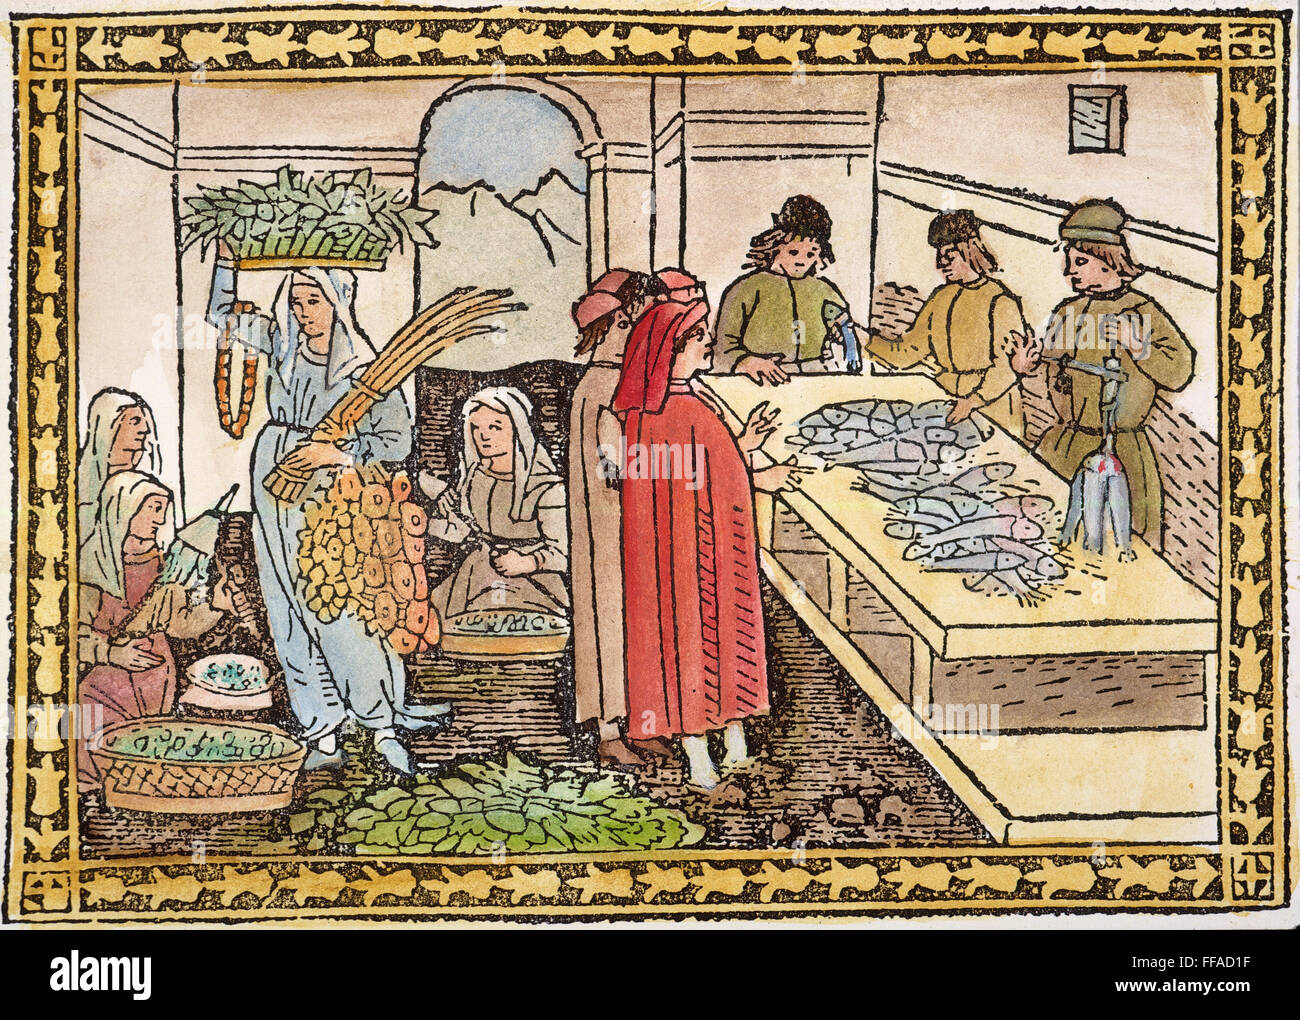 MARKET, 15th CENTURY. /nA market at Florence, Italy. Woodcut, Italian, 15th century. Stock Photo